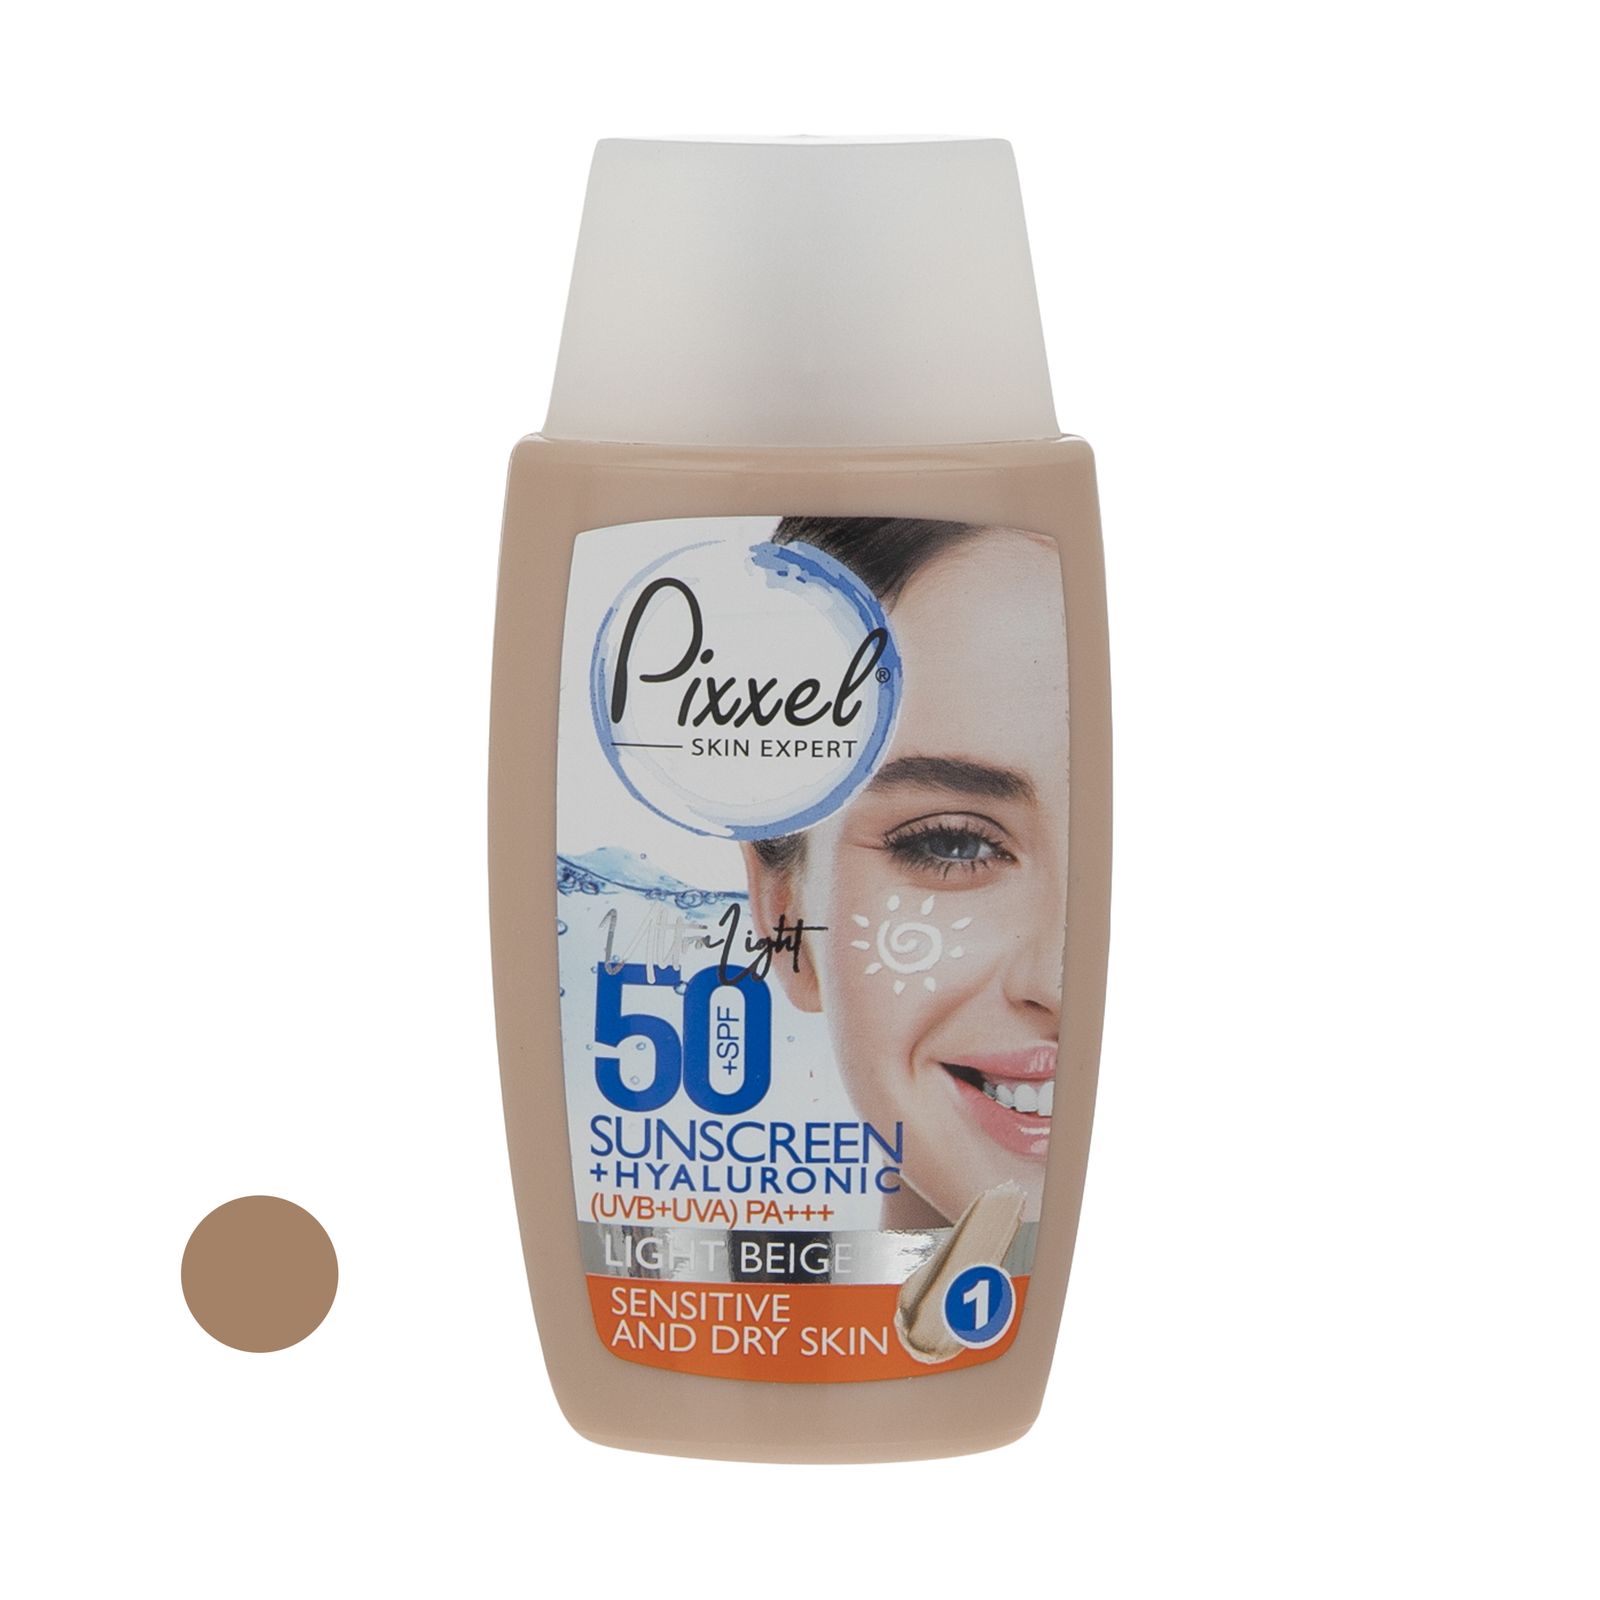 کرم ضد آفتاب رنگی پیکسل +SPF50 مدل LIGHT BEIGE مناسب پوست های حساس و خشک حجم 50 میلی لیتر -  - 1